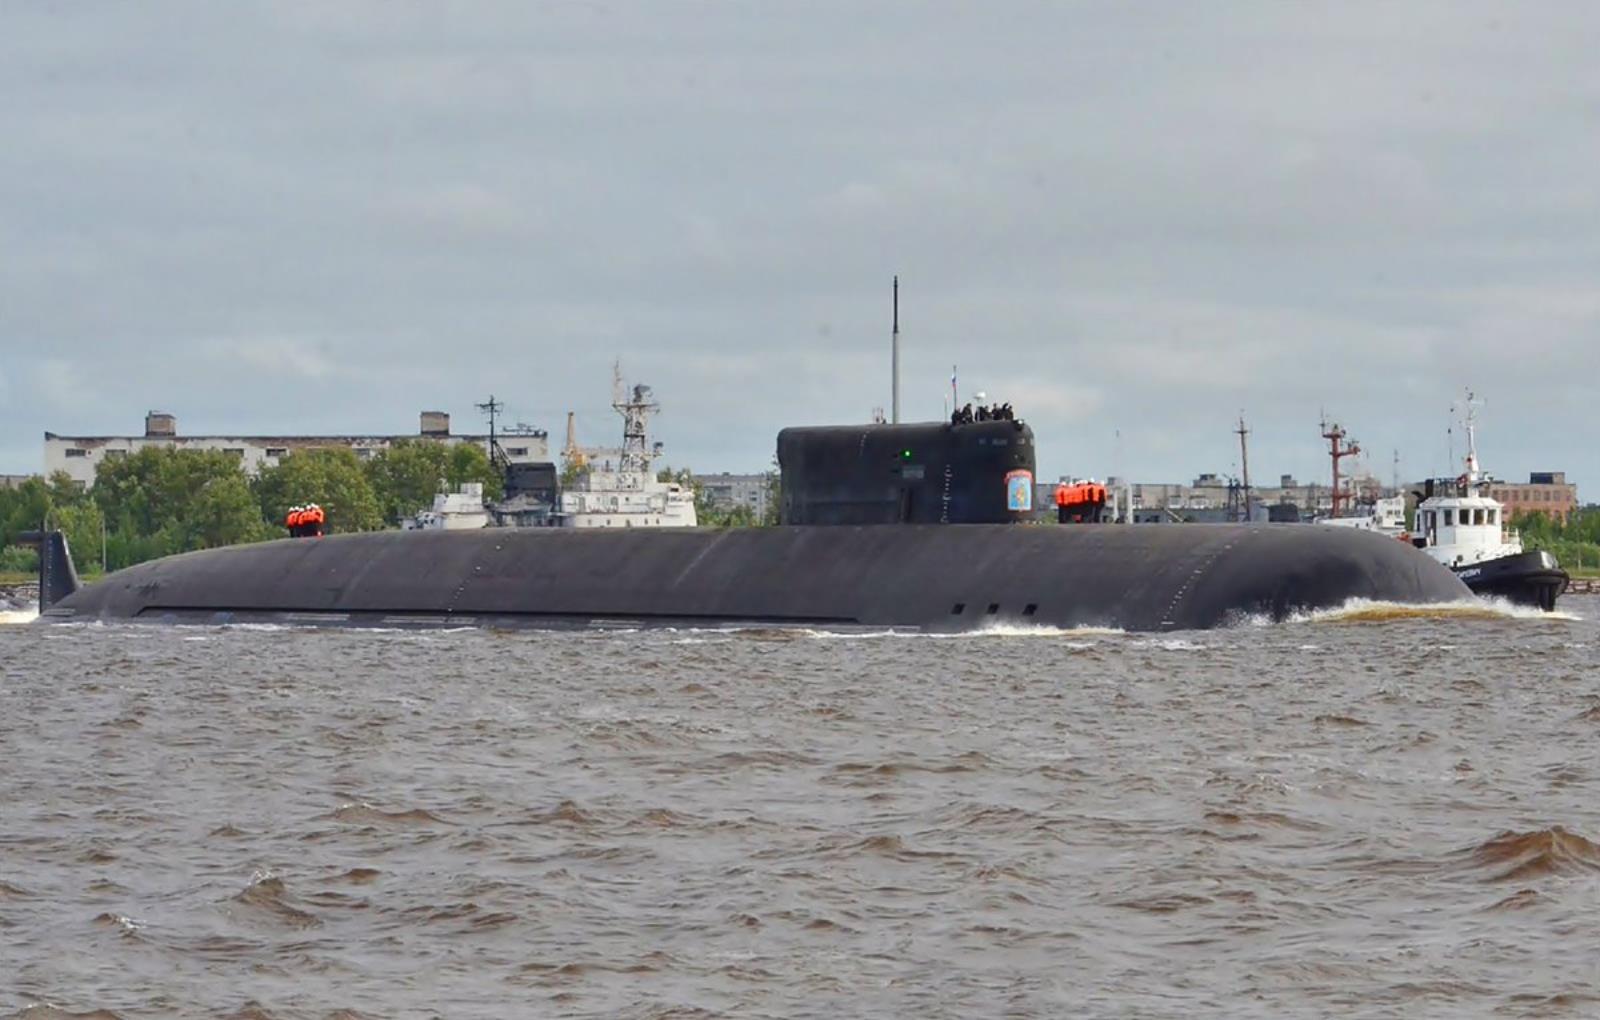 Okręt podwodny K-329 Biełgorod zmierza na służbę. Jest najdłuższy i strzela torpedami nuklearnymi wielkości autobusu